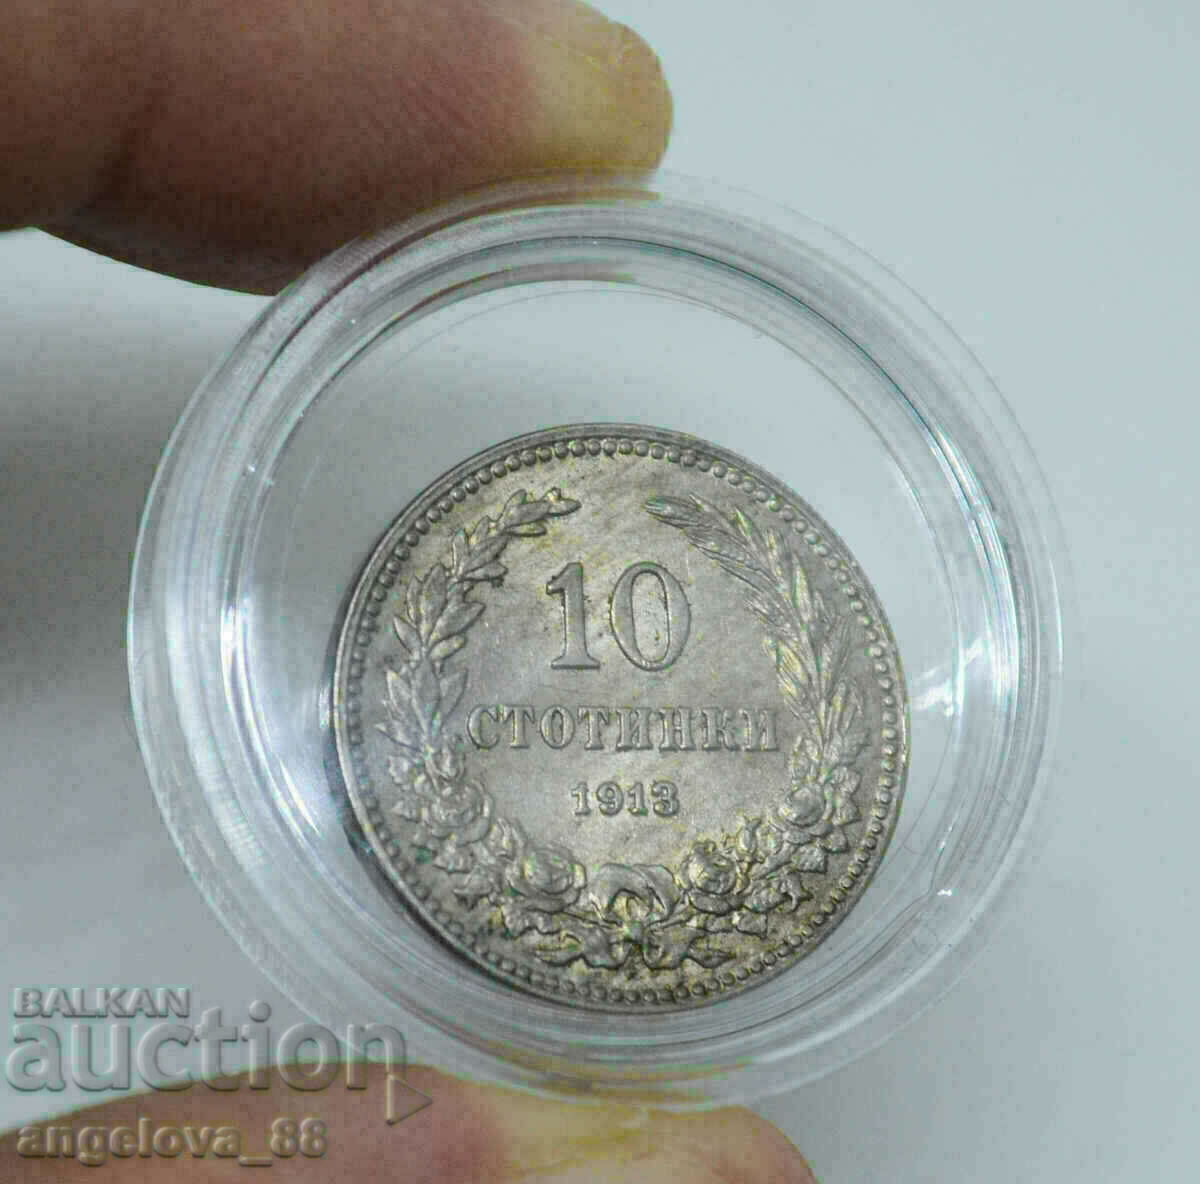 Bulgaria 10 cenți 1913 Excelent